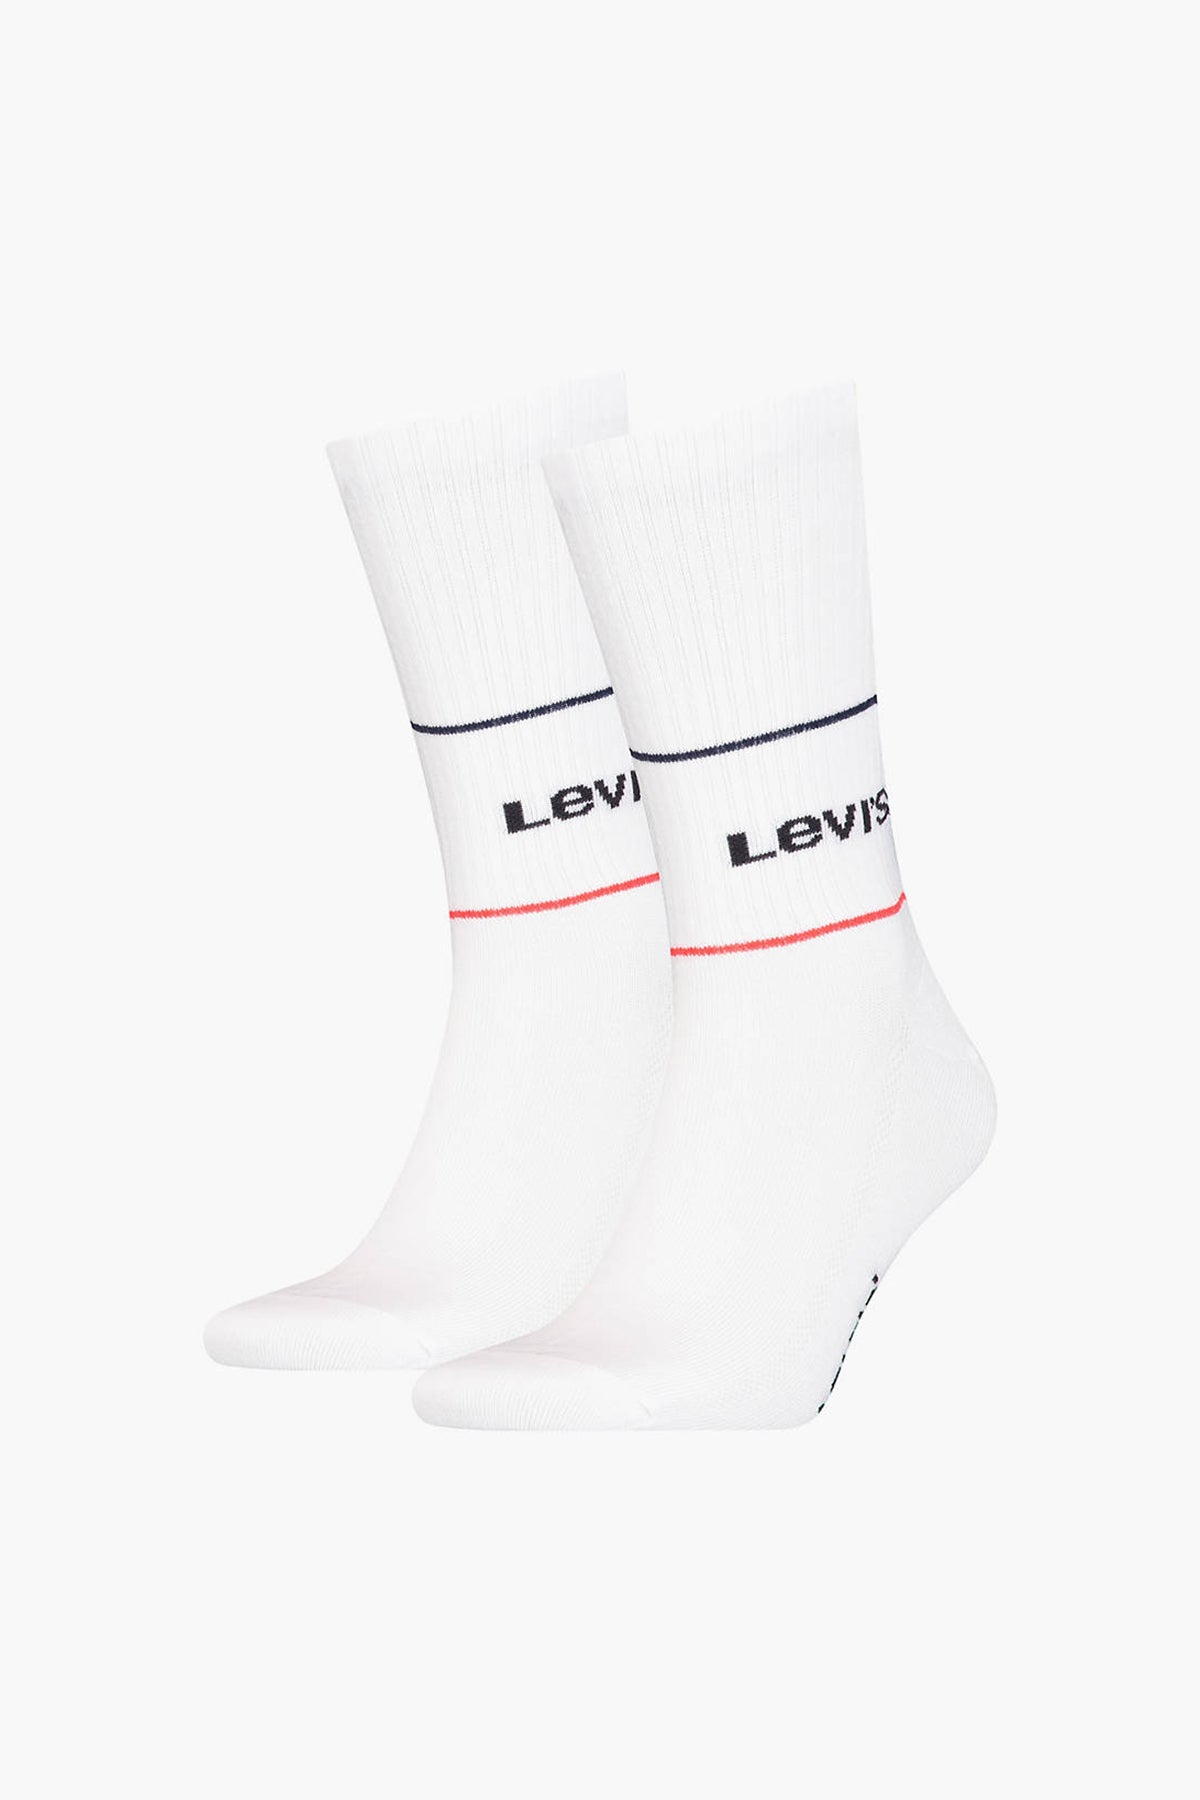 Levi's Organik Pamuklu 2 Pack Uzun Erkek Çorap 37157-0668 BEYAZ